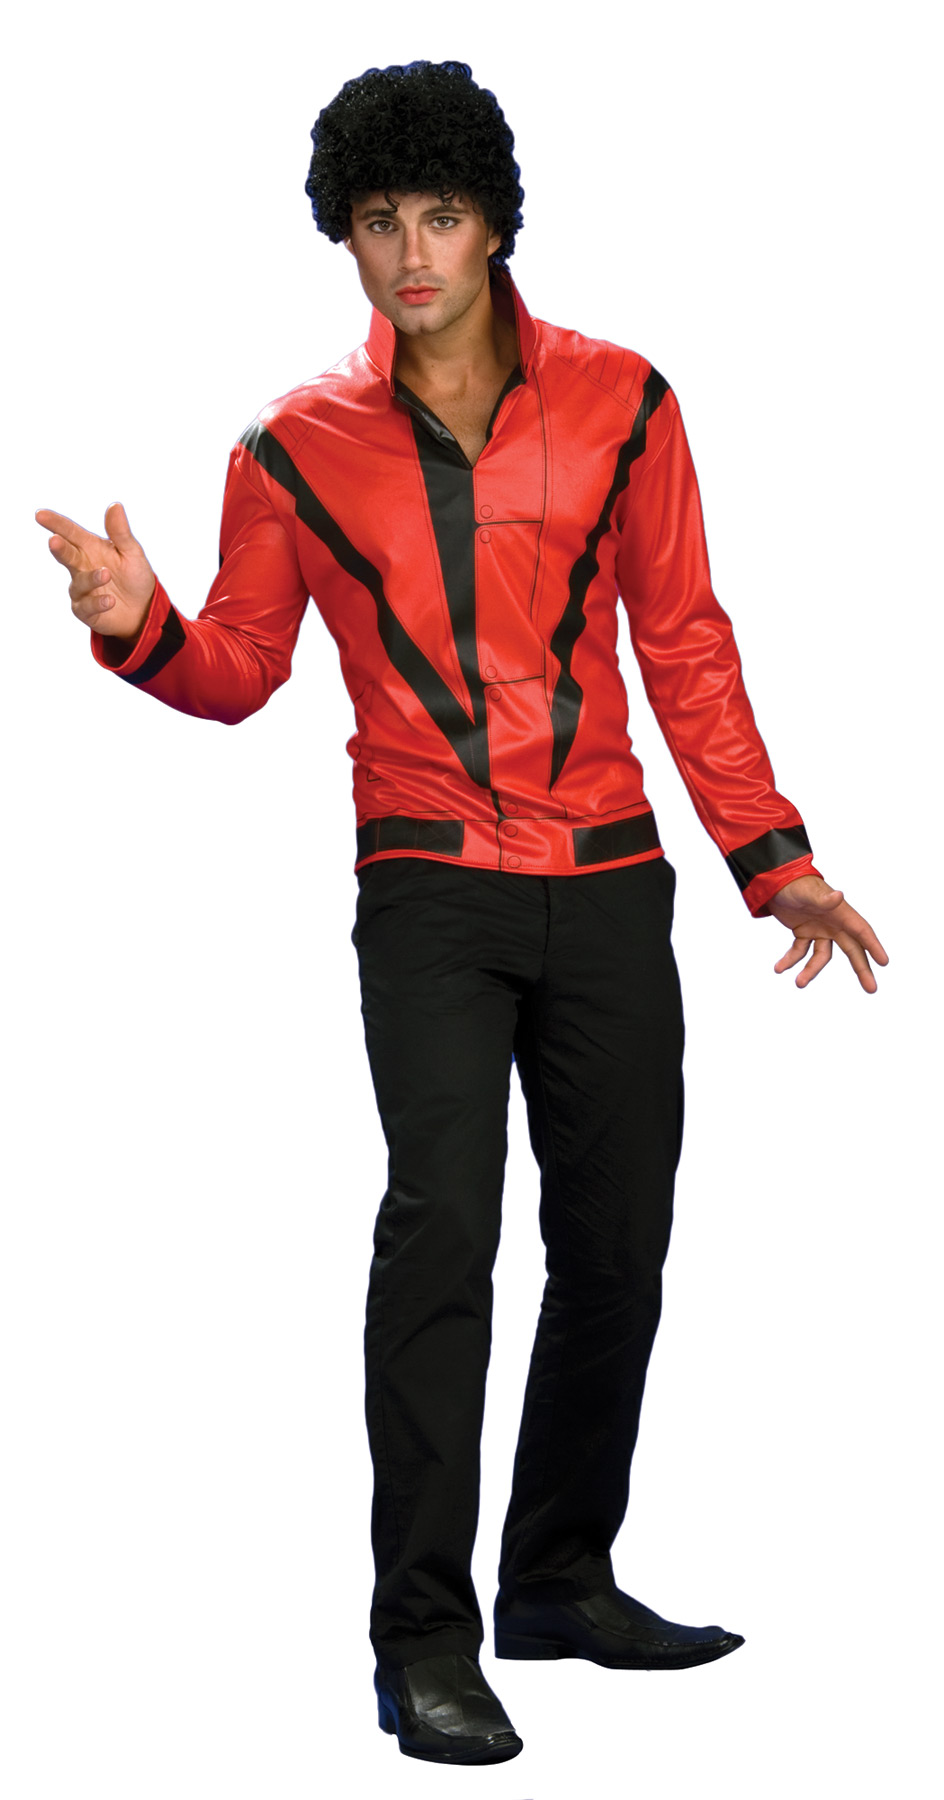 Thriller Michael Jackson Costume, Carbon Costume